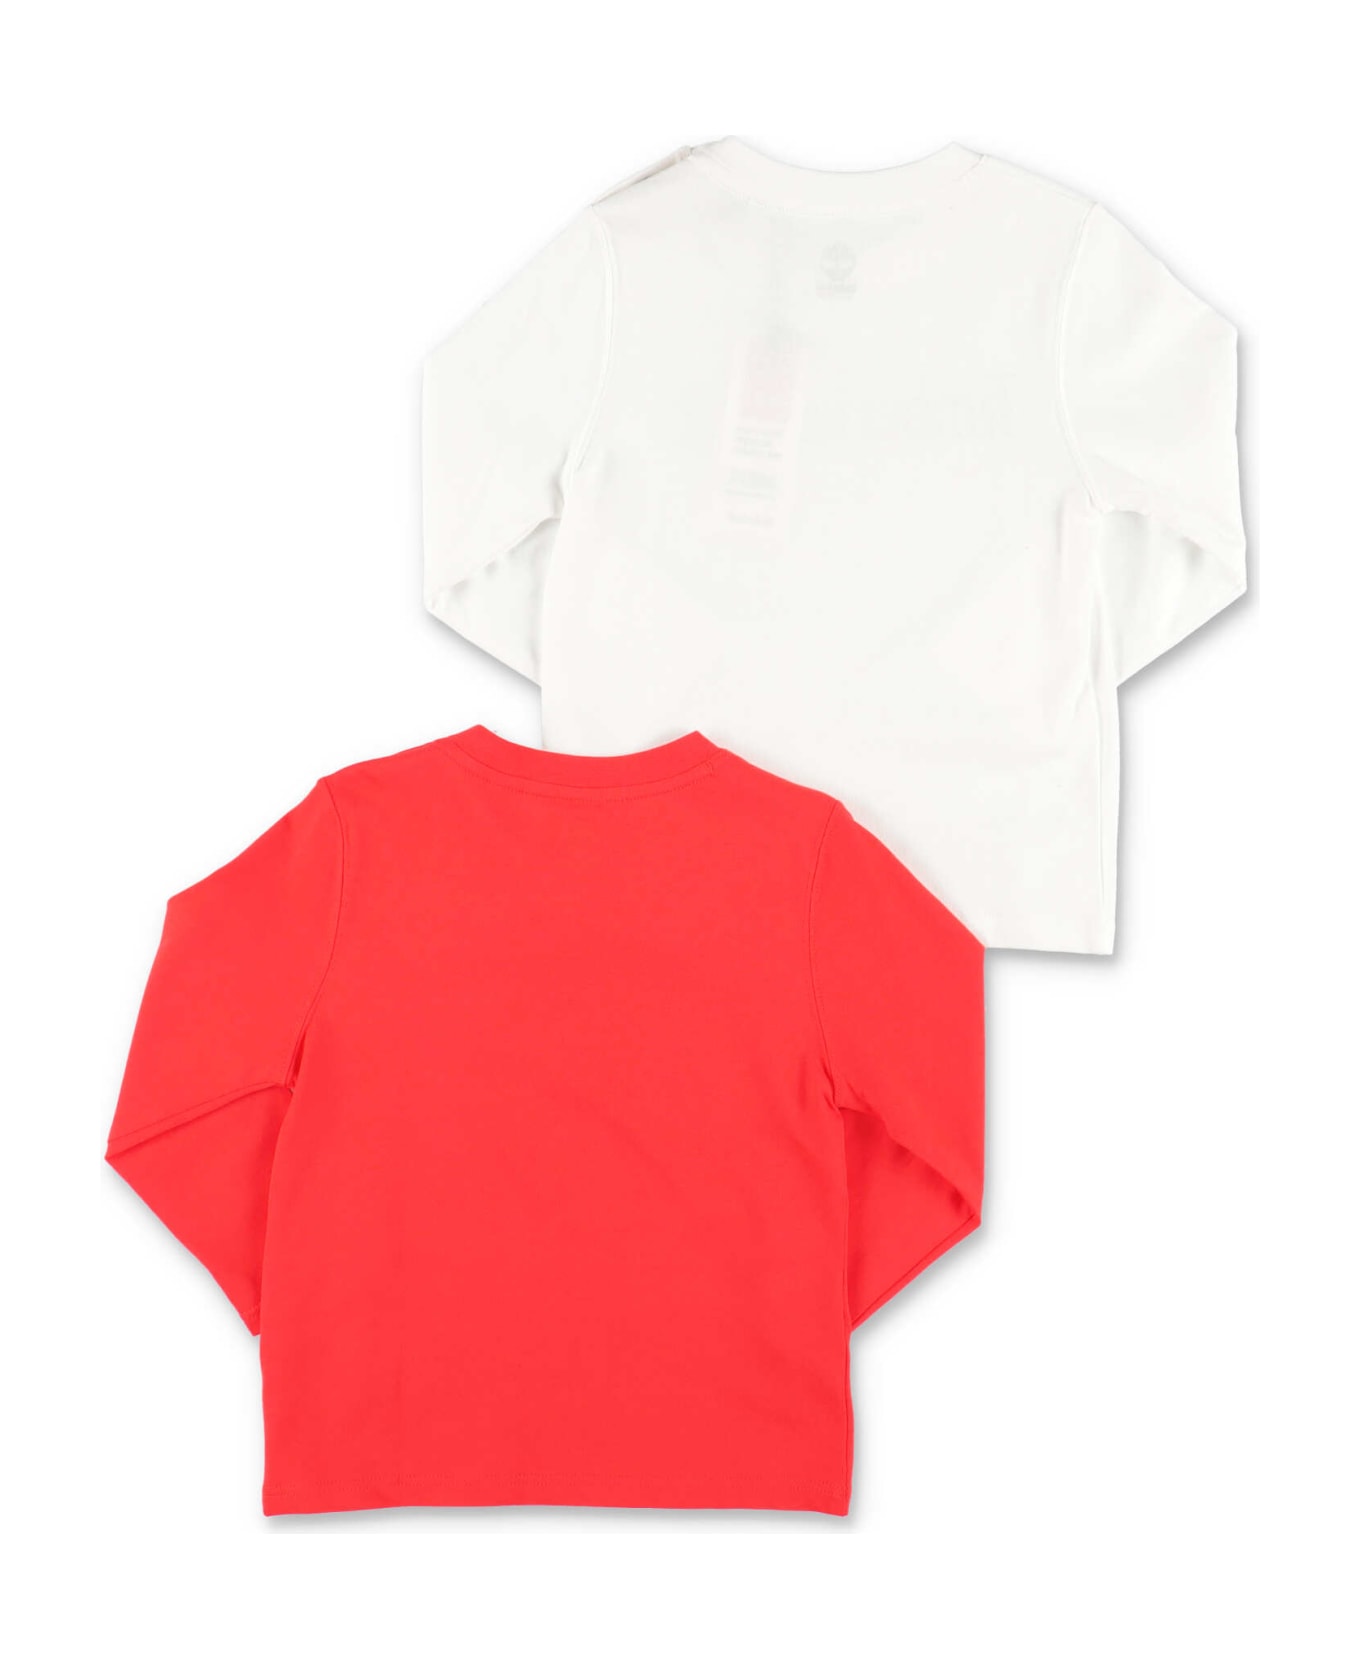 Timberland Set Due T-shirt Una Bianca Una Rossa In Jersey Di Cotone - Bianco